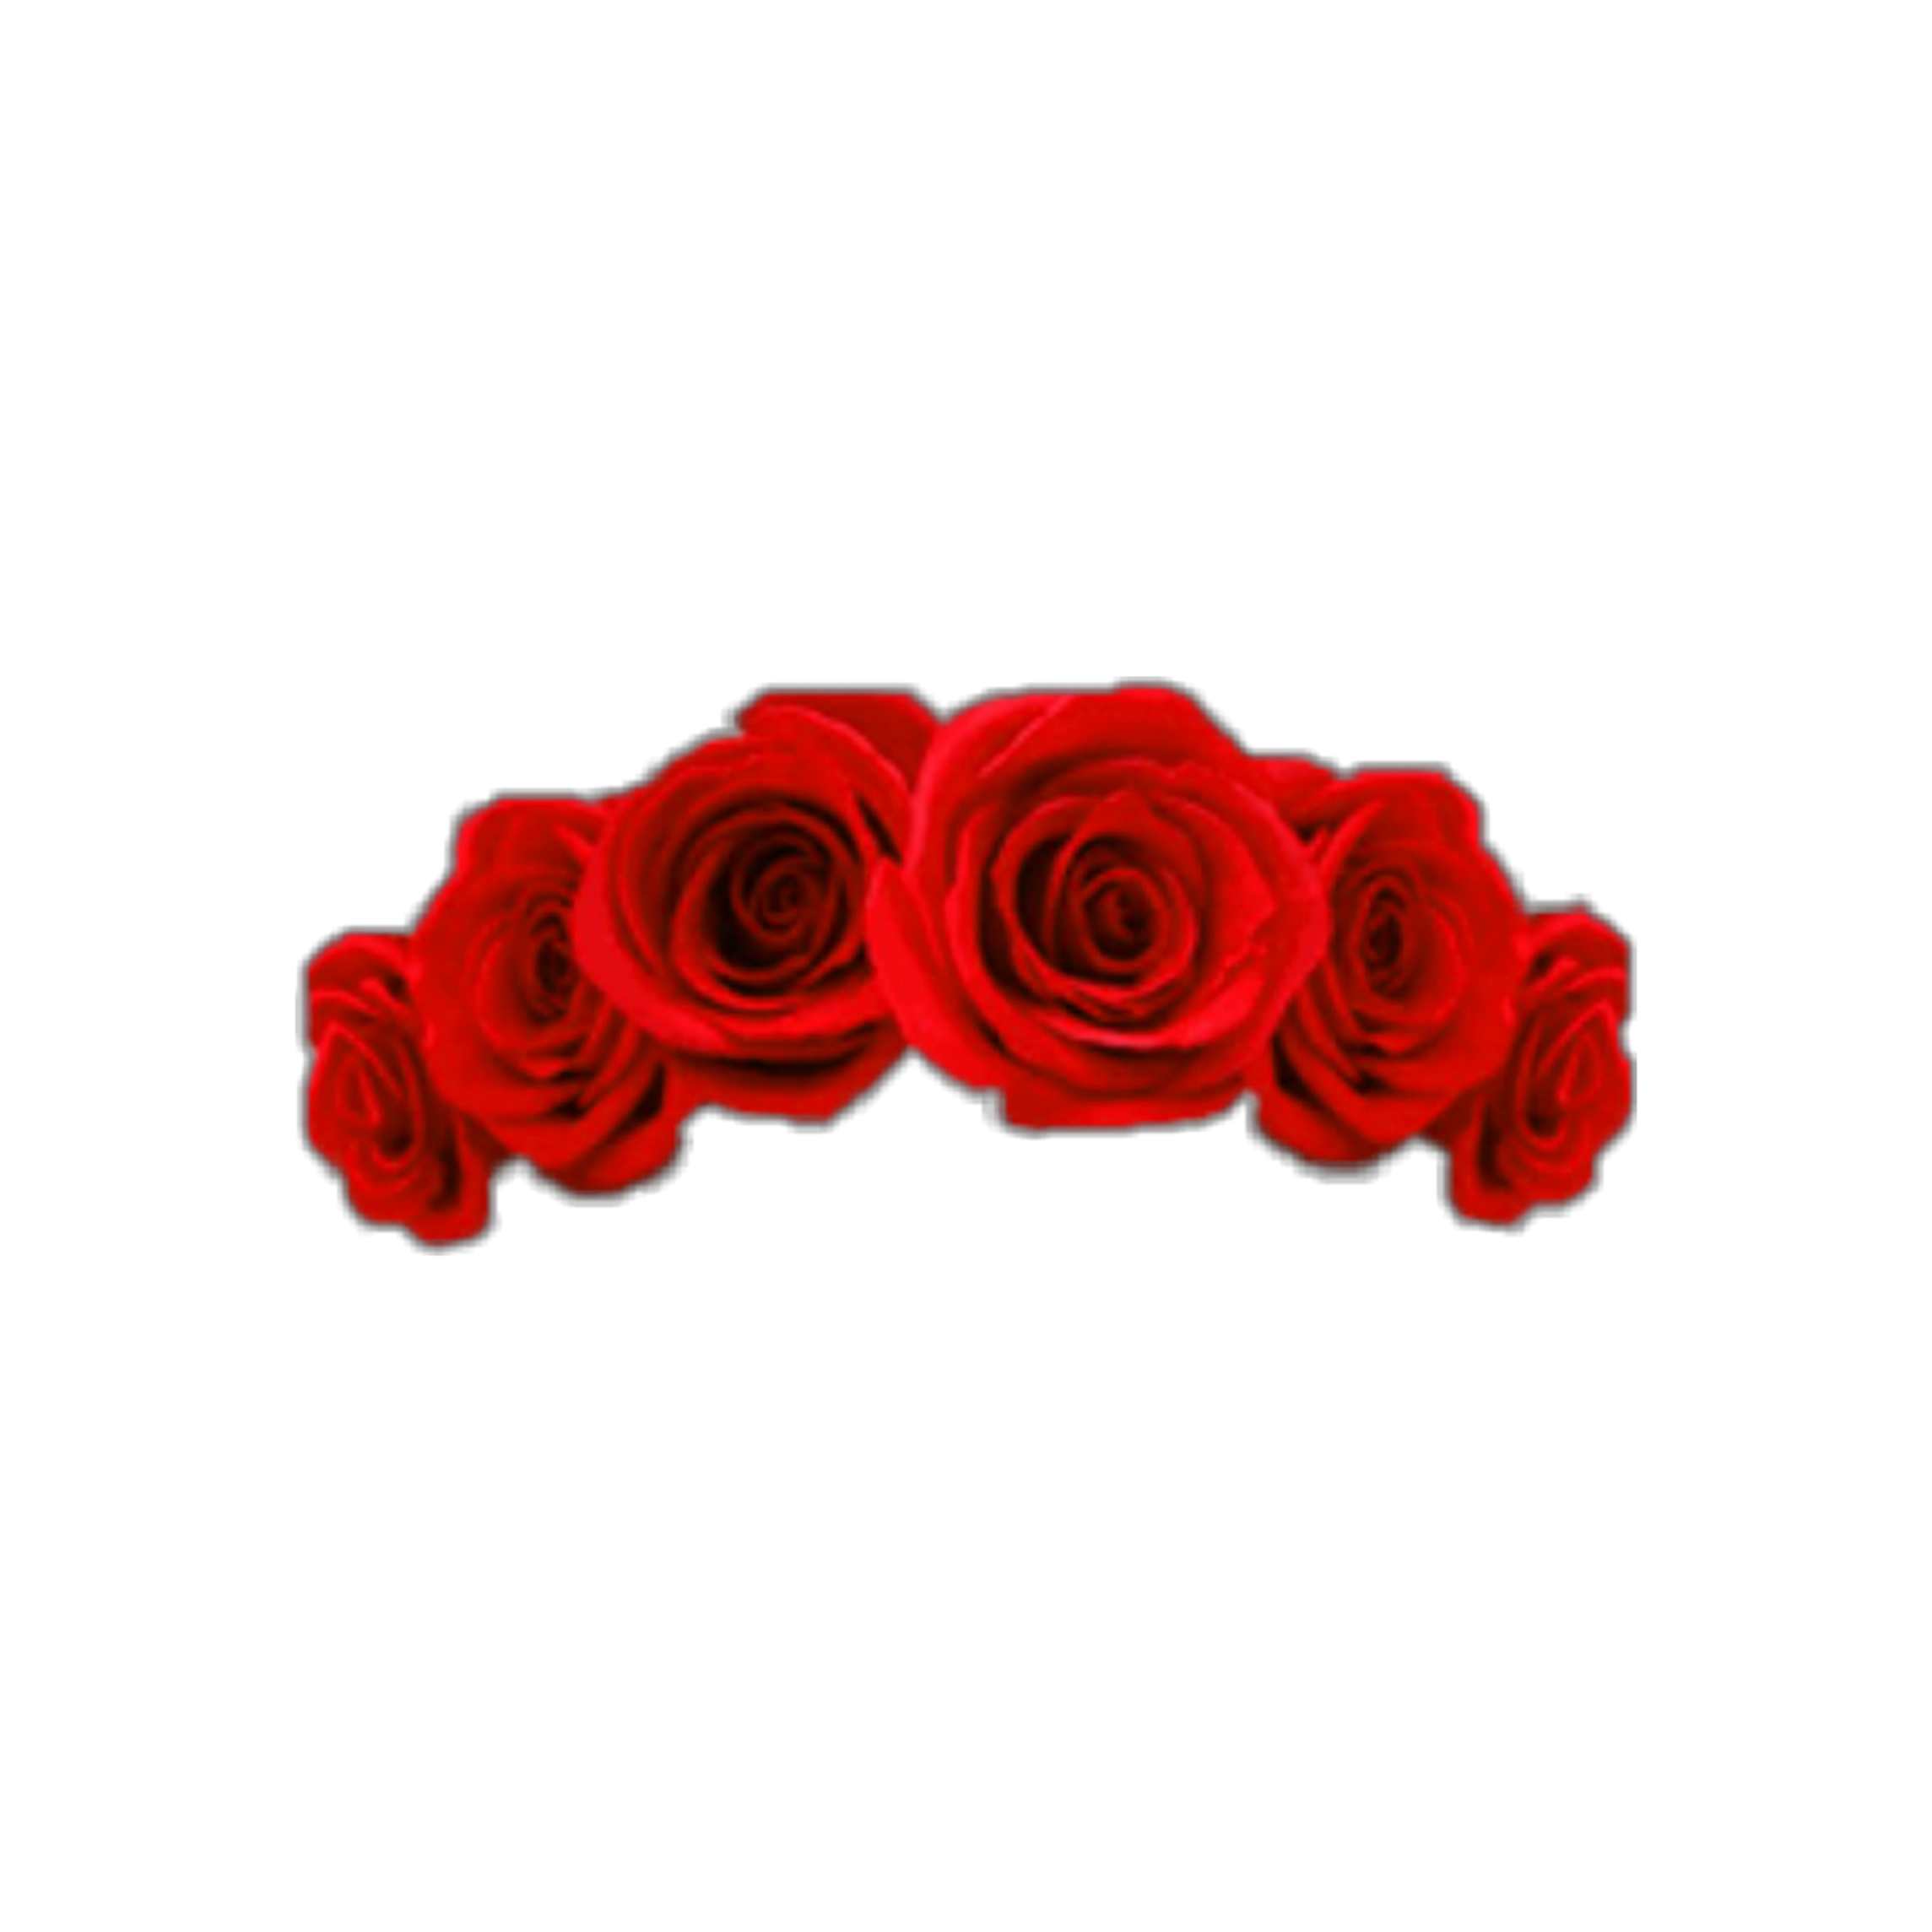 Free Free 178 Rose Flower Crown Svg SVG PNG EPS DXF File